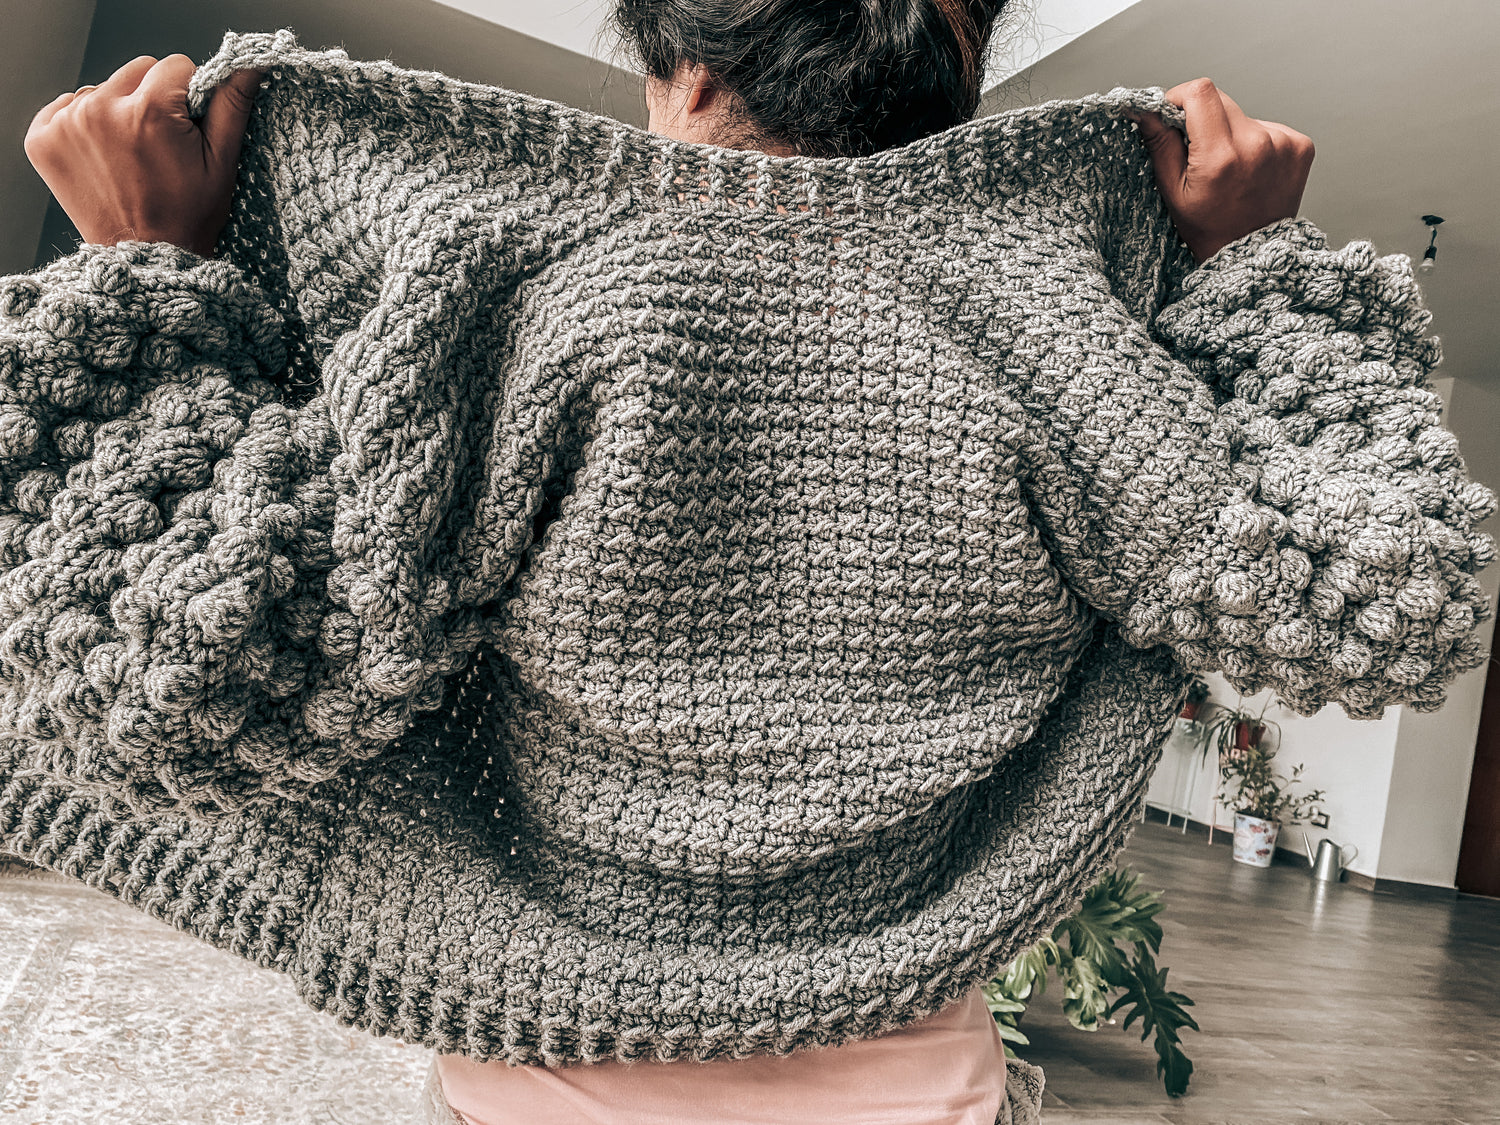 Cinnamon Jacket-Crochet pattern by Zein Crochet Designs